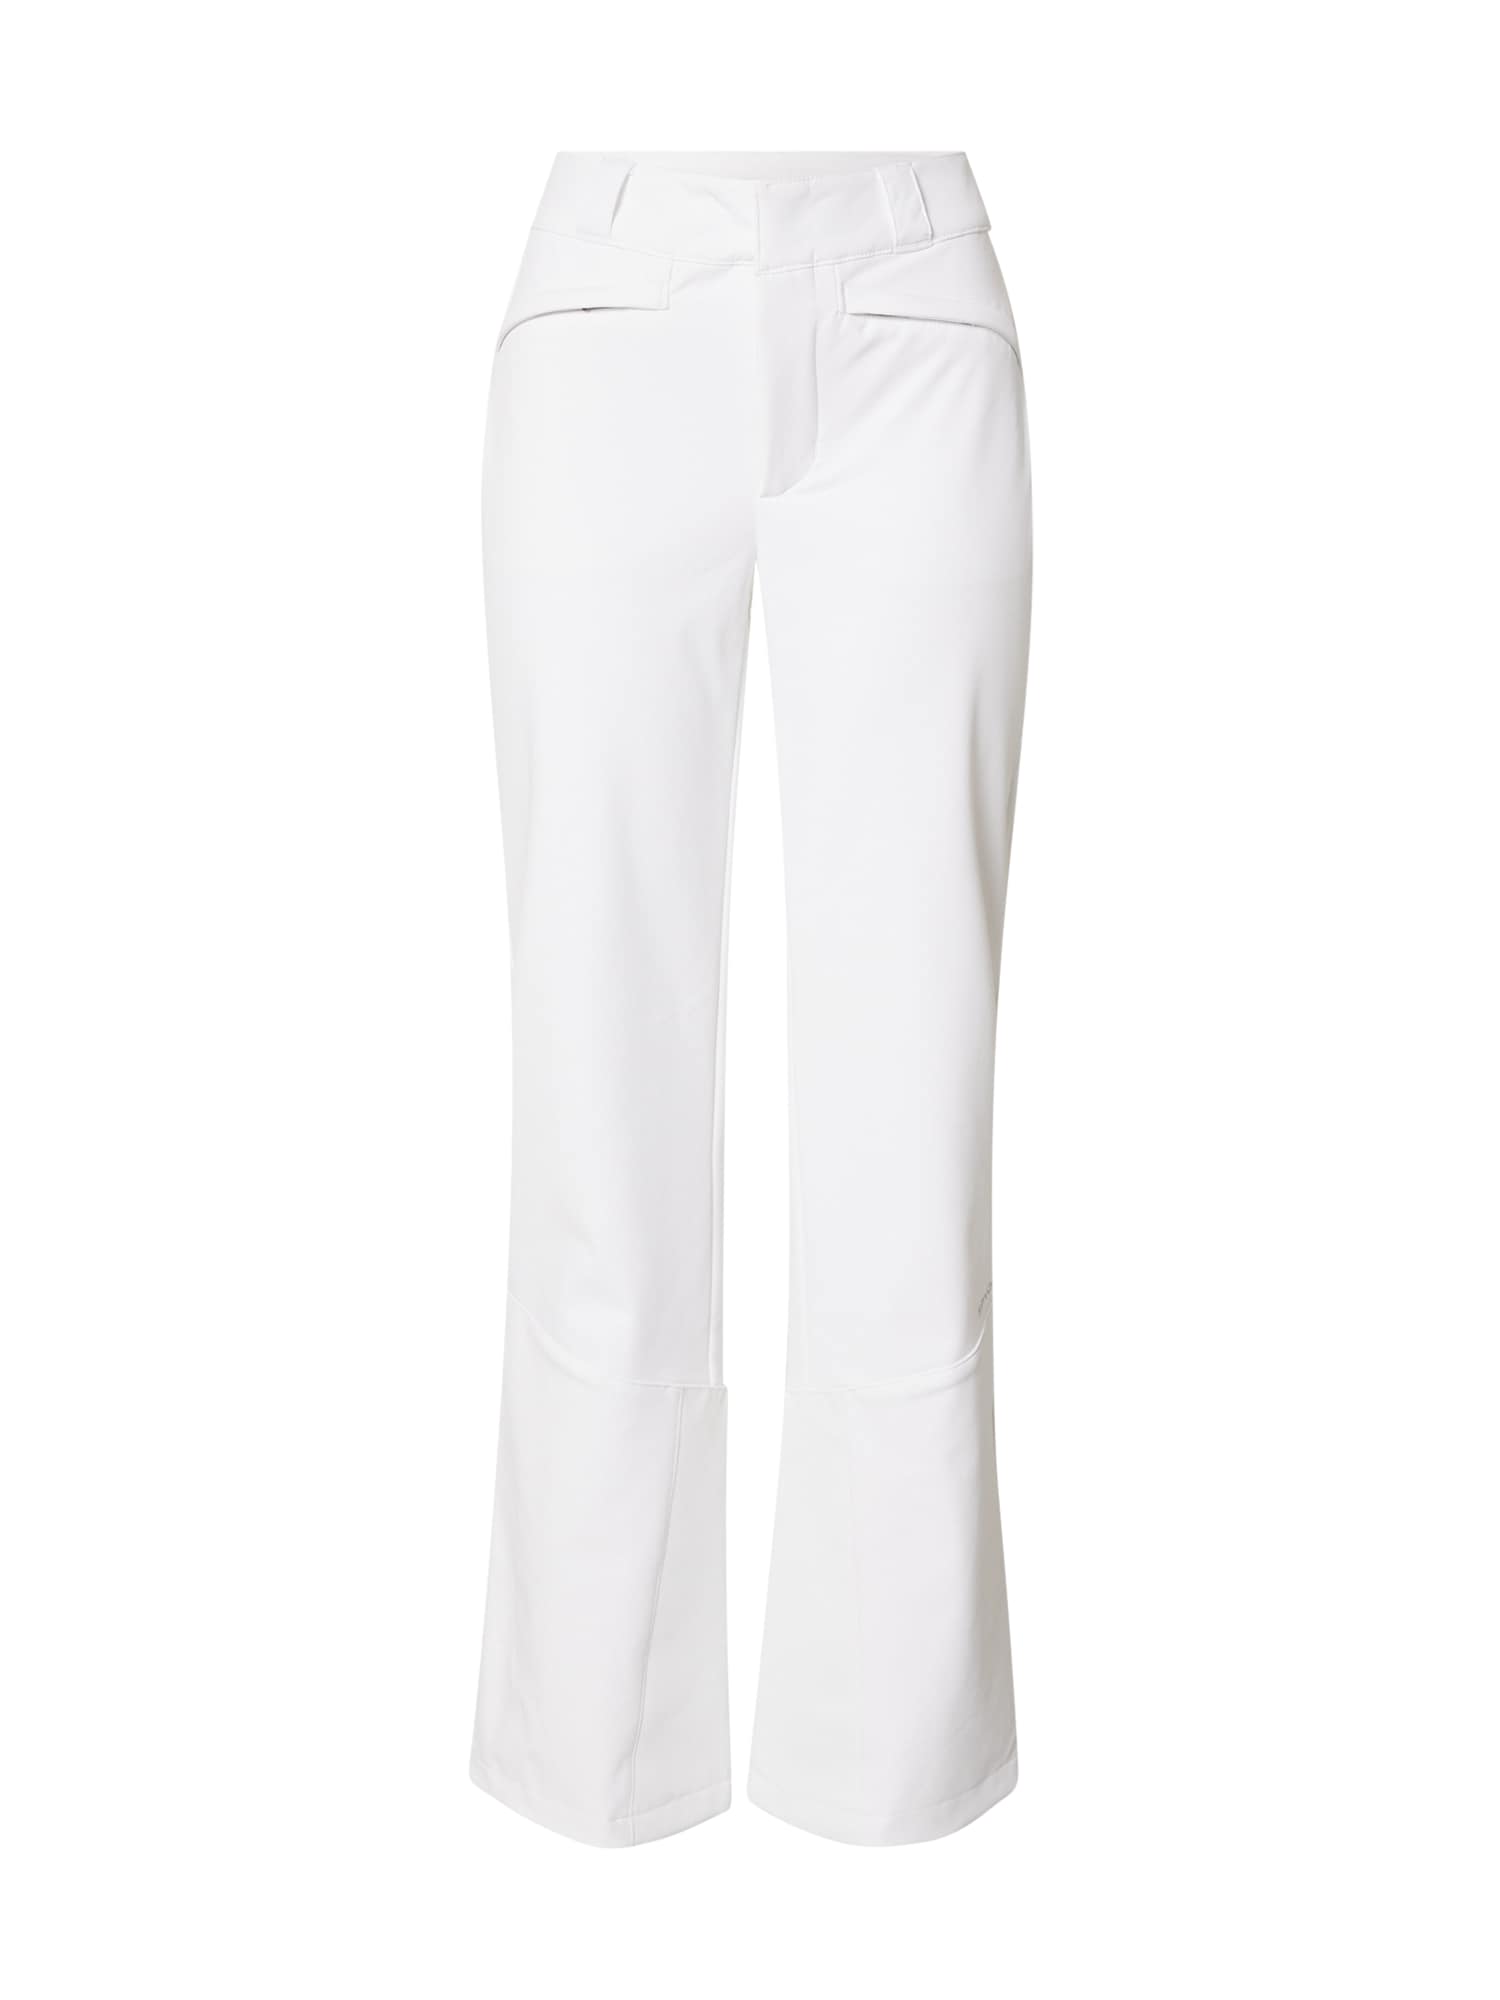 Outdoorové nohavice strieborná biela Spyder